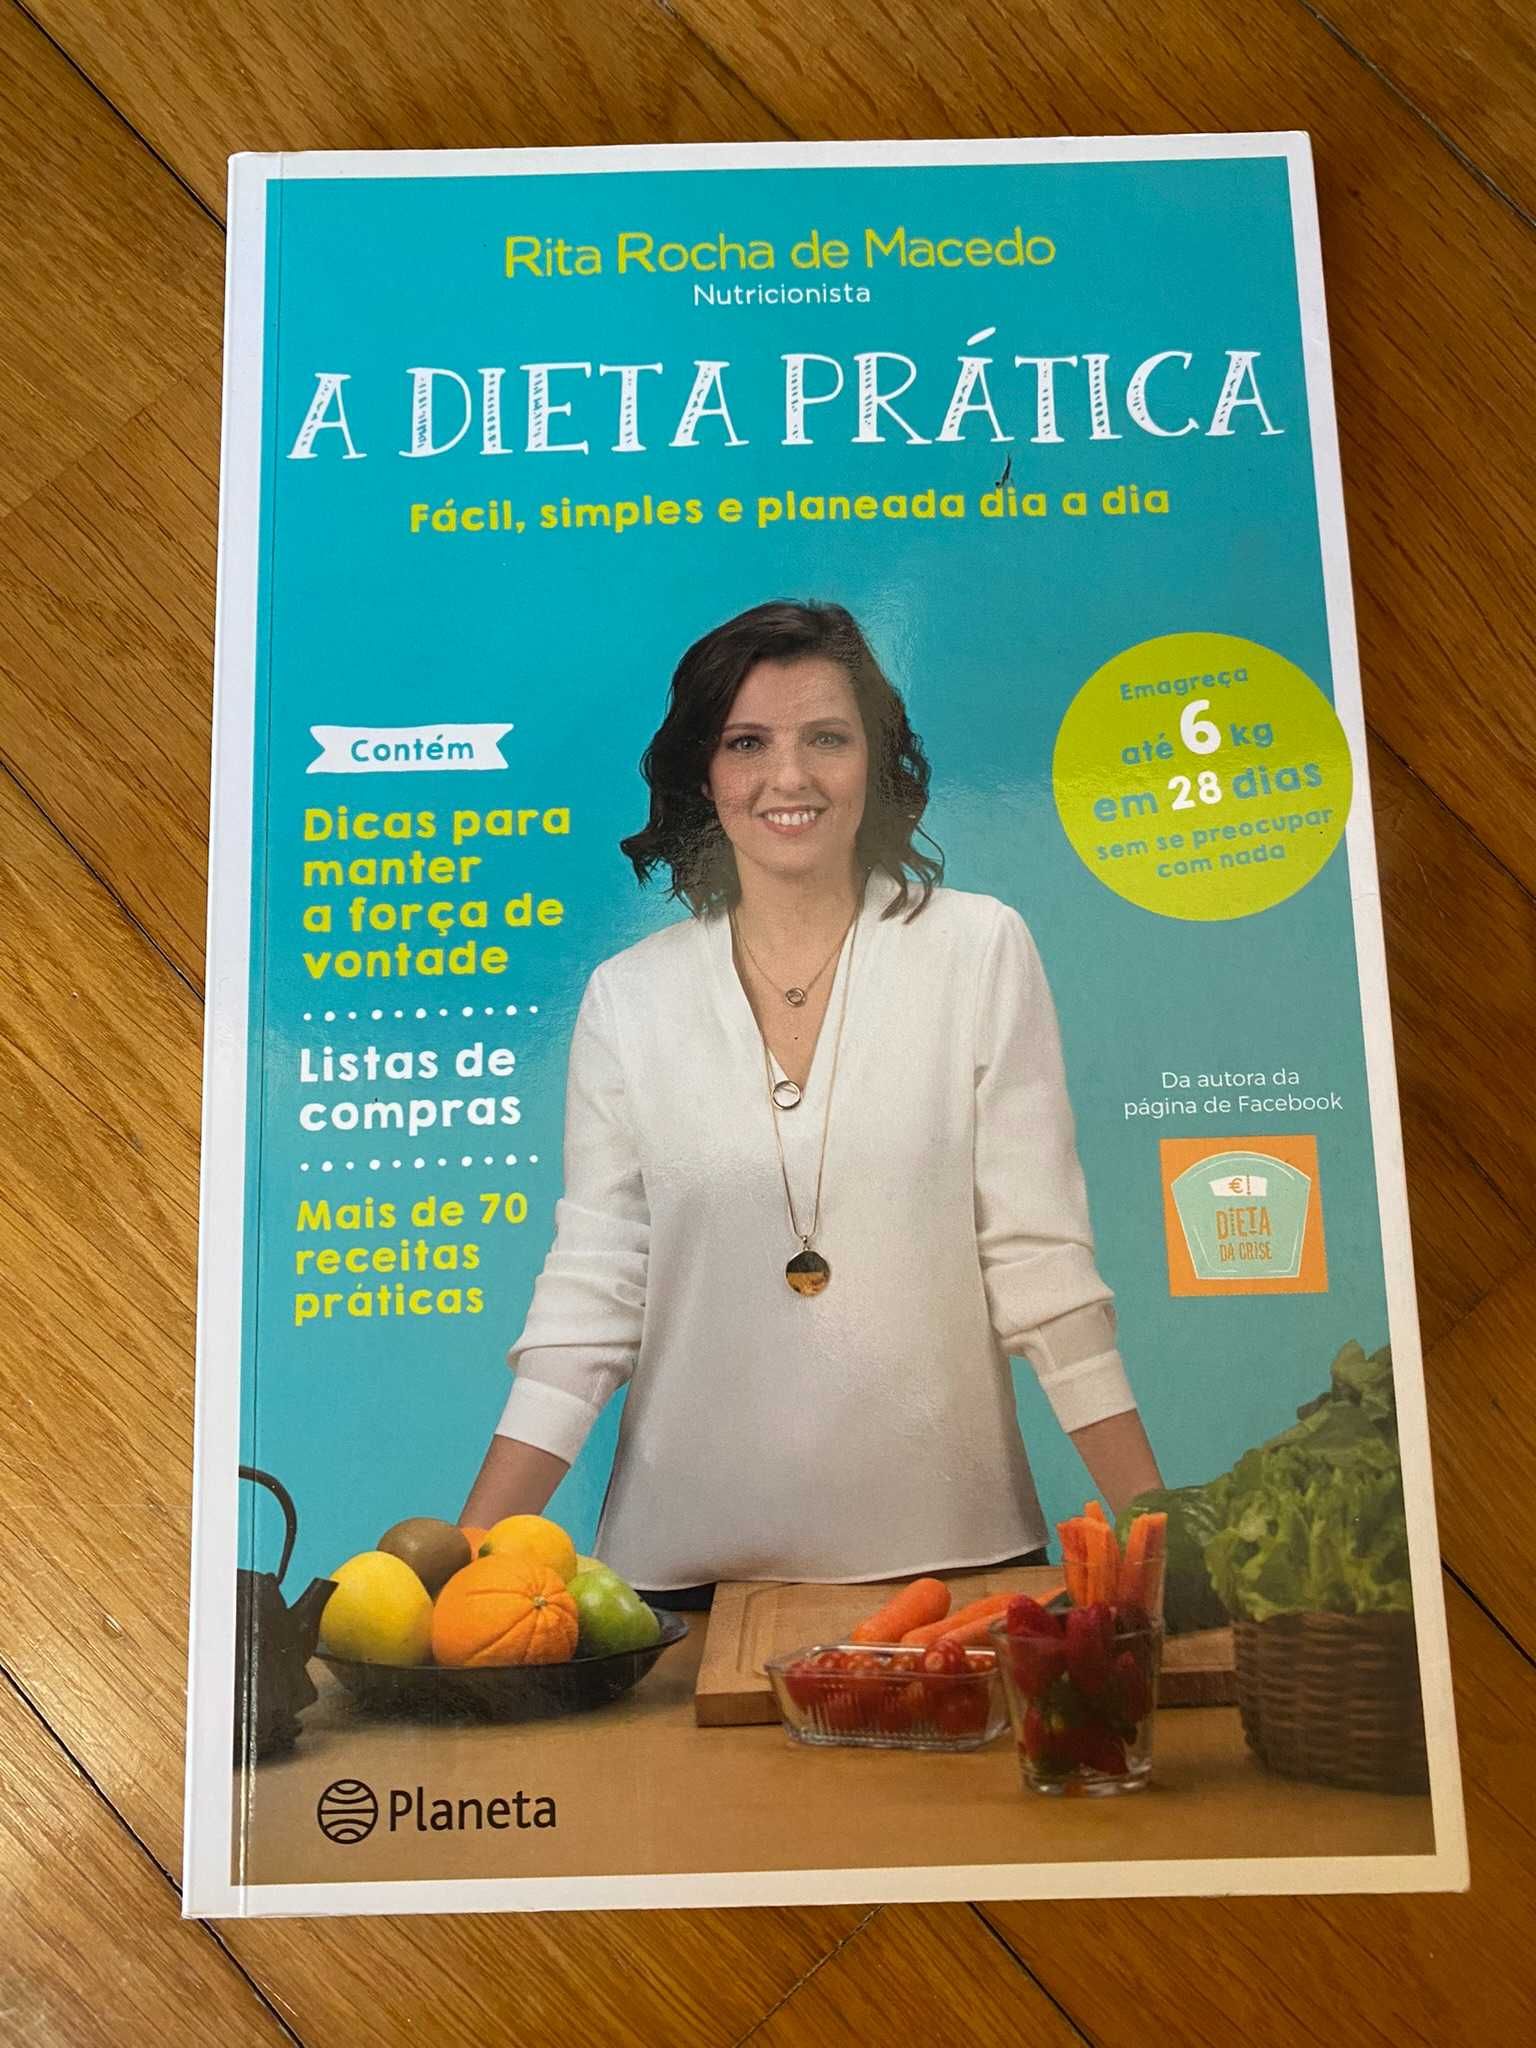 Livro "A Dieta Prática"